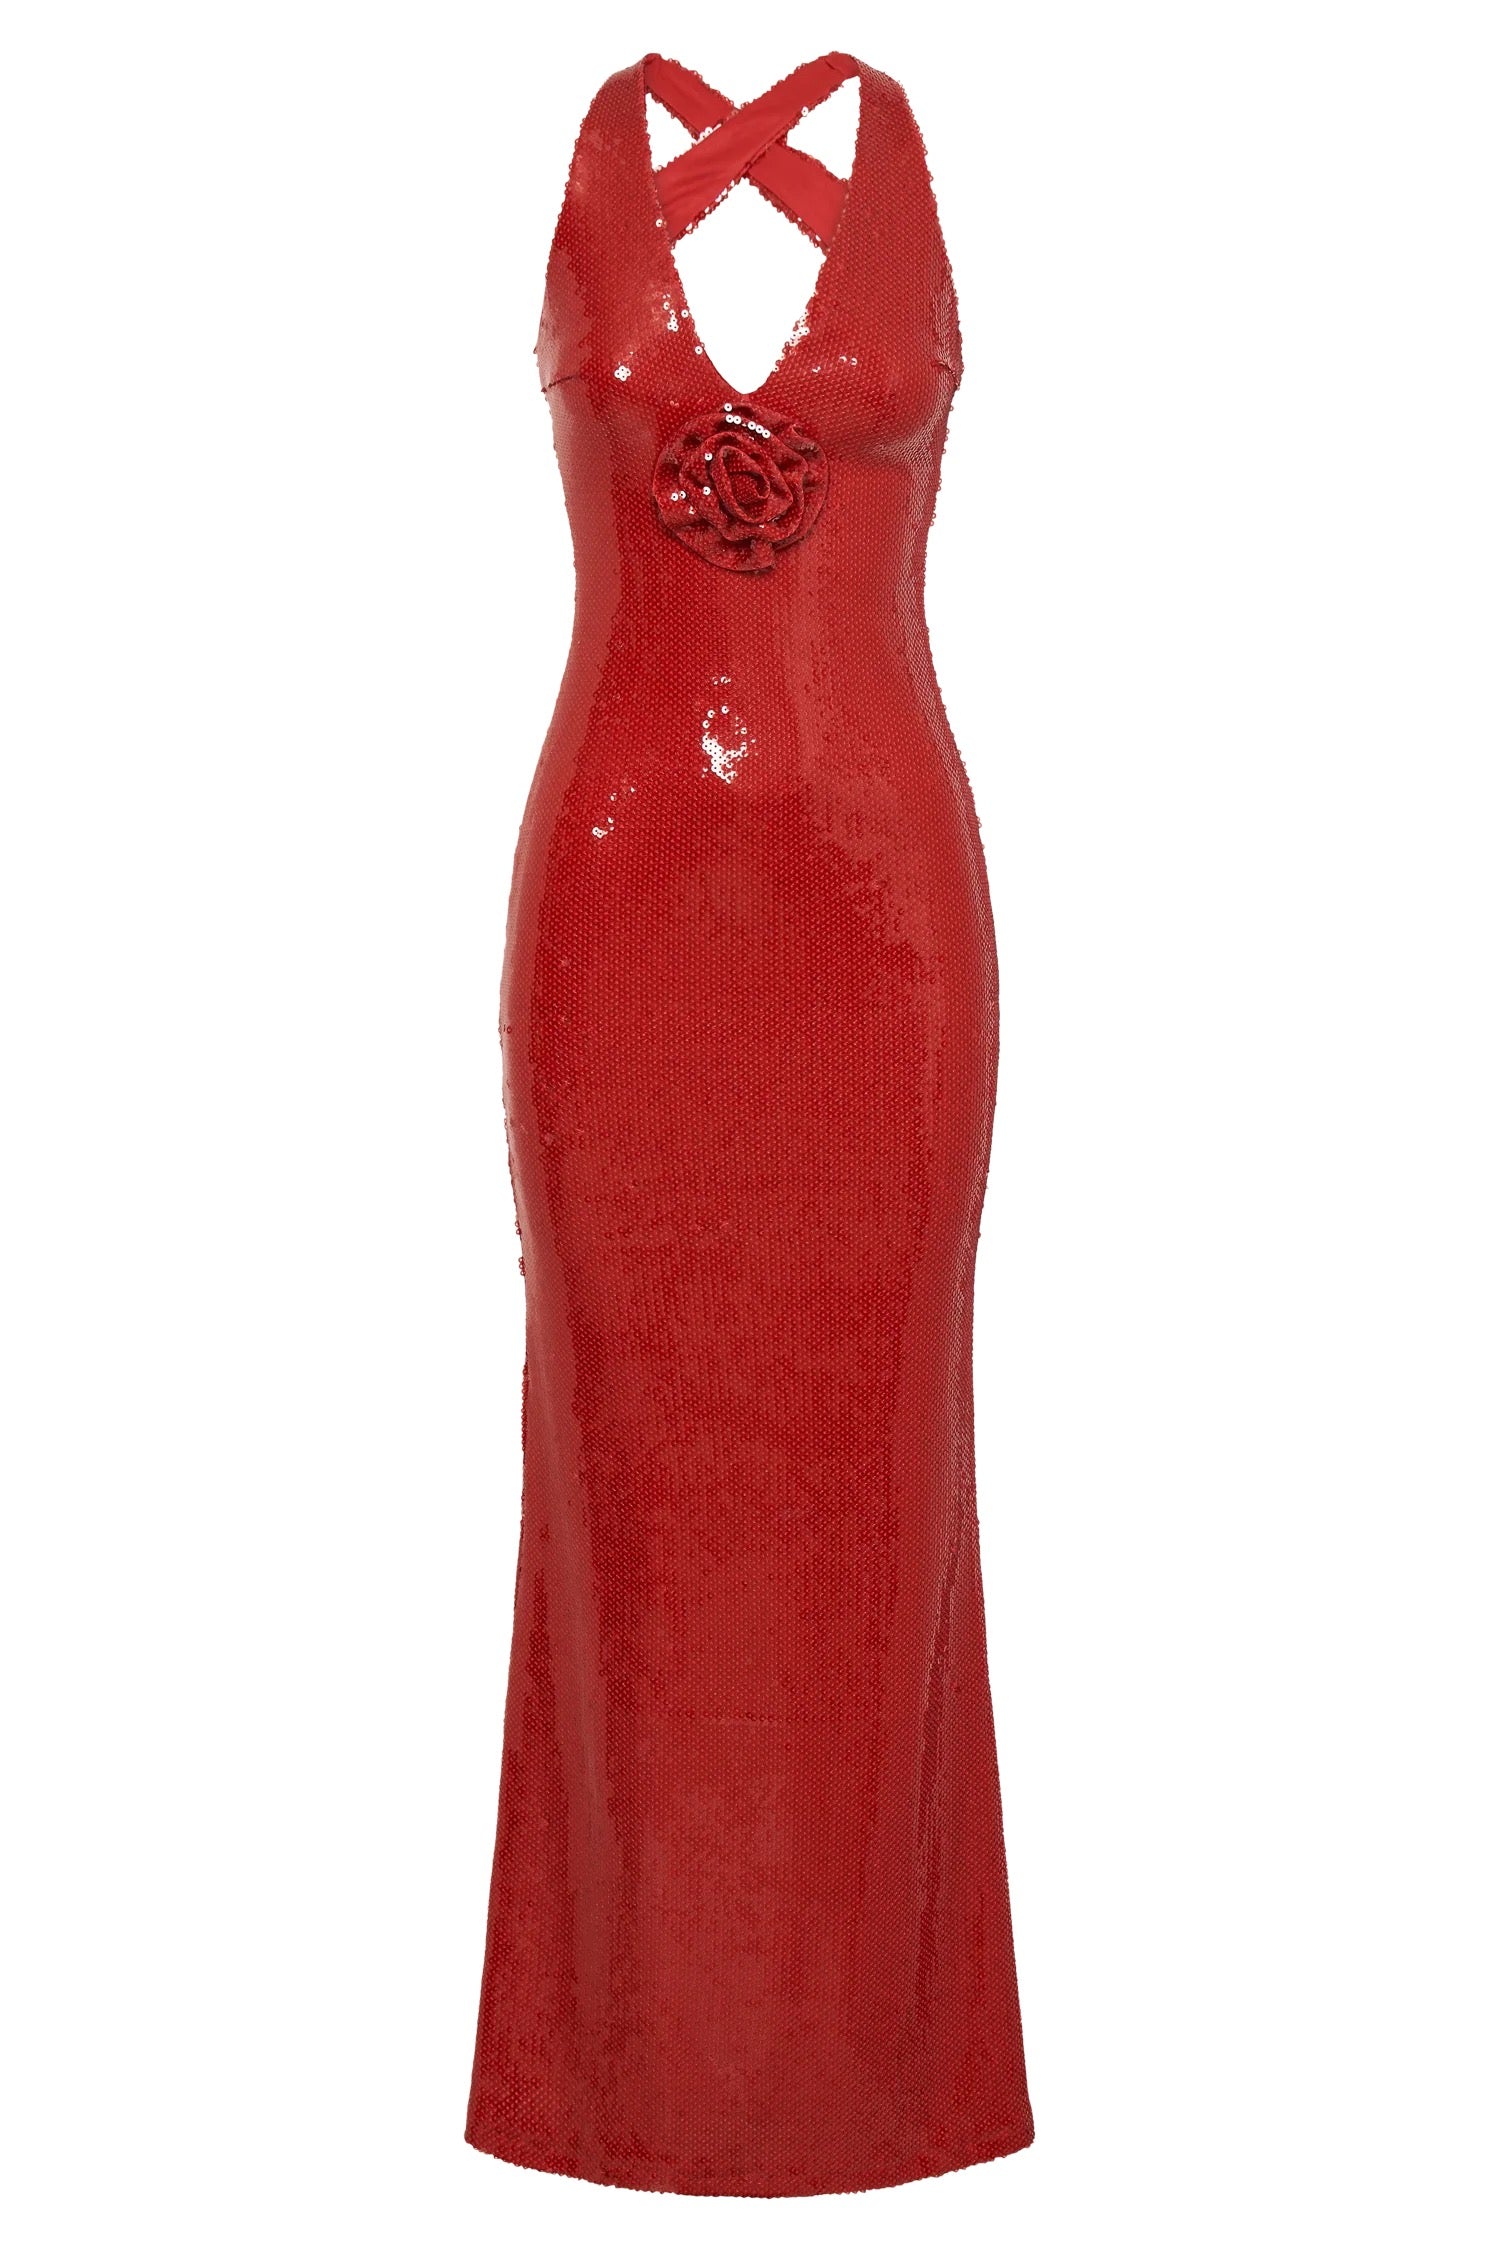 Meshki Rose Sequin Maxi Dress